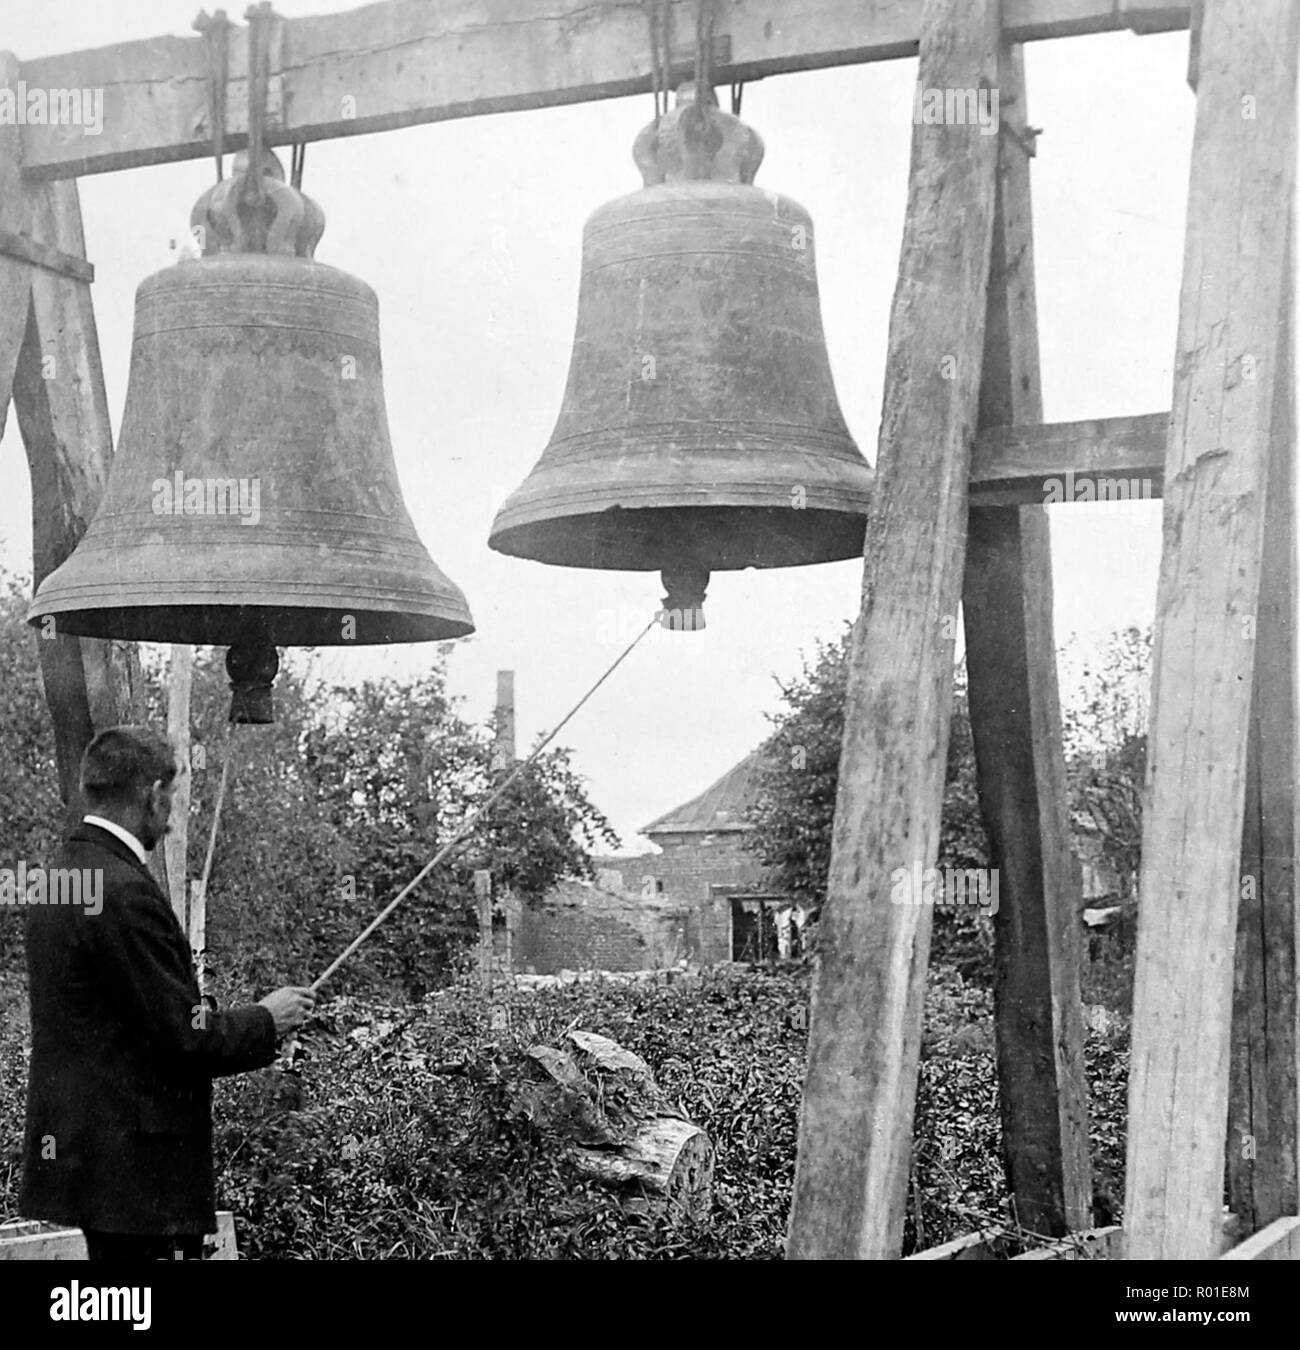 Villers-Bretonneaux cloches de l'Église, pendant la Première Guerre mondiale Banque D'Images